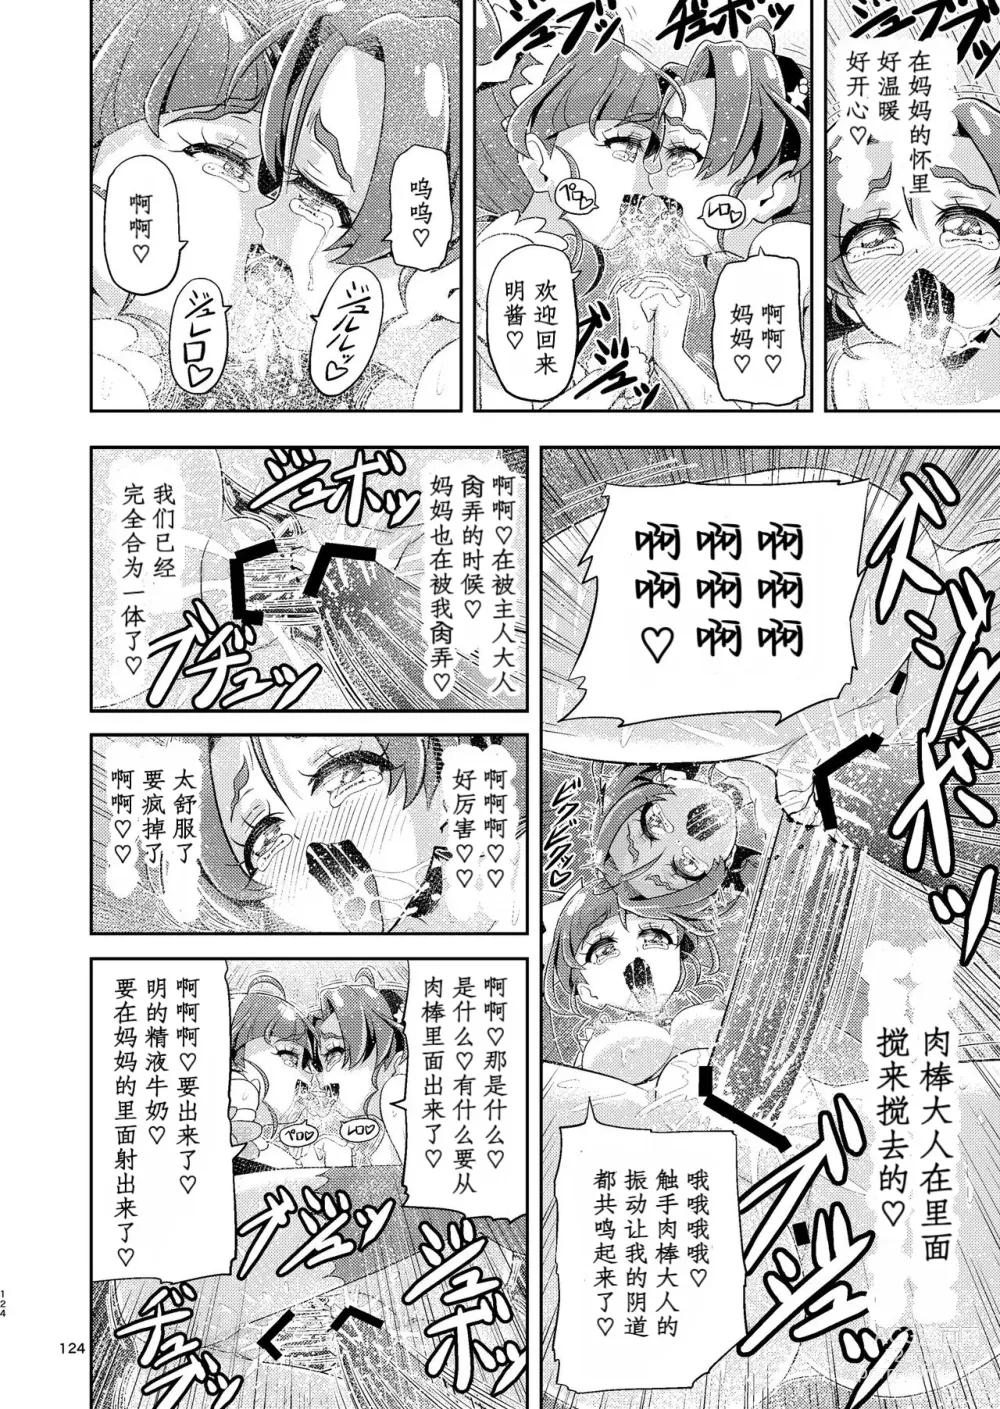 Page 73 of doujinshi Hoshi Asobi 2